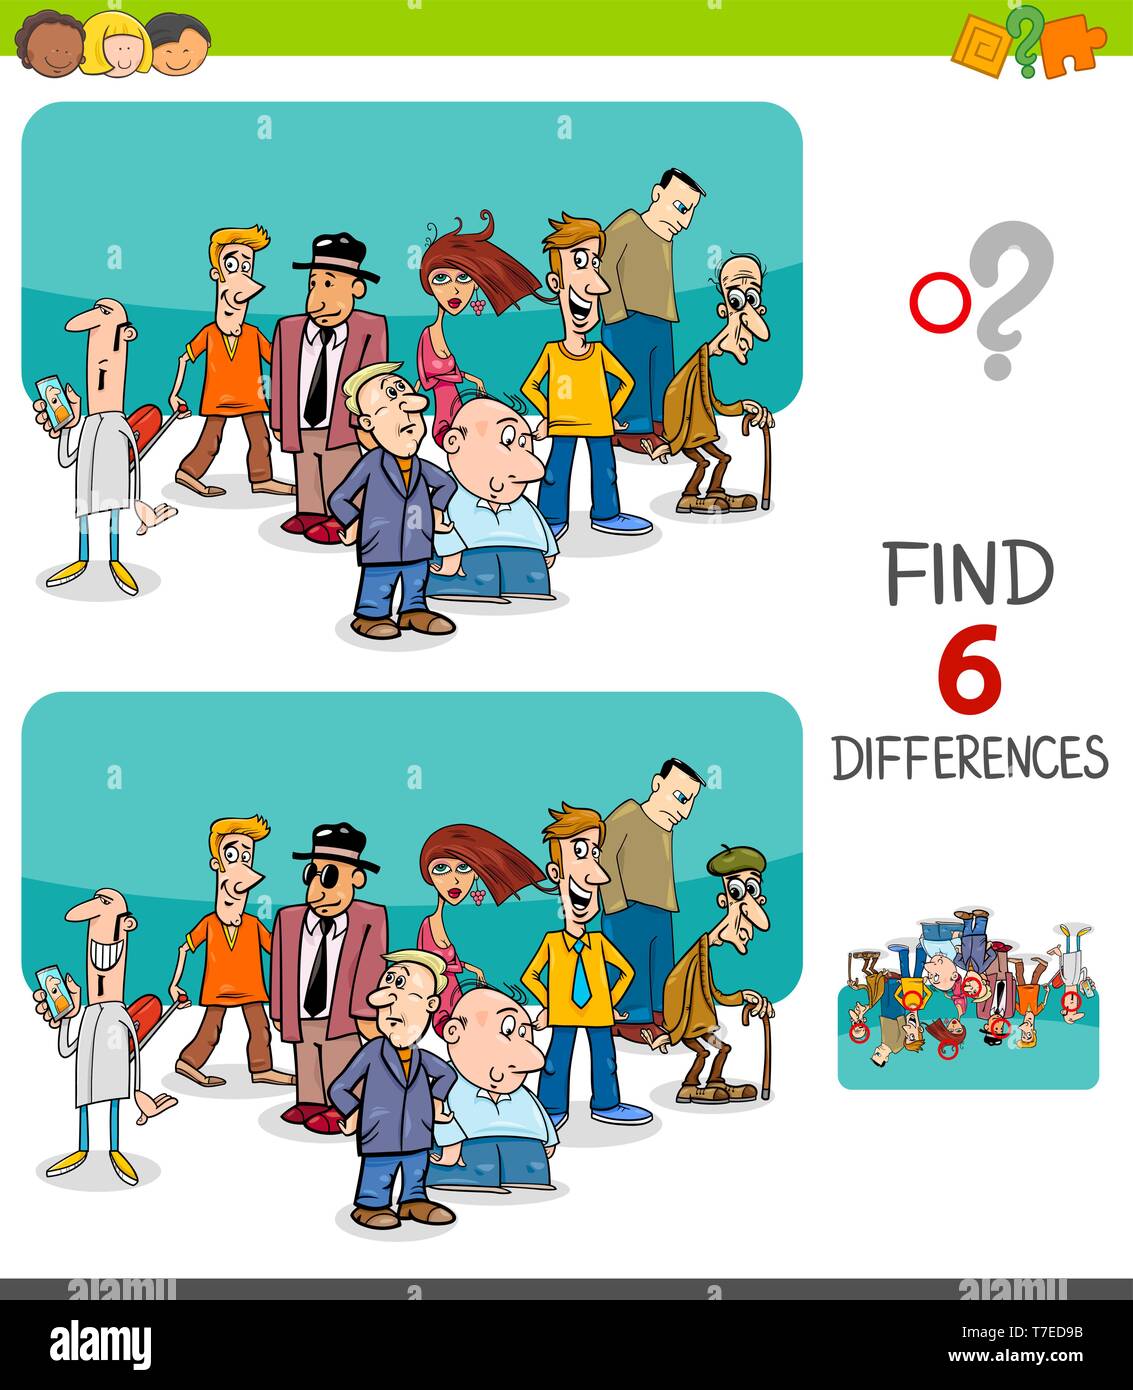 Illustrazione del fumetto di trovare 6 differenze tra le immagini del gioco educativo per bambini con le persone del gruppo di caratteri Illustrazione Vettoriale